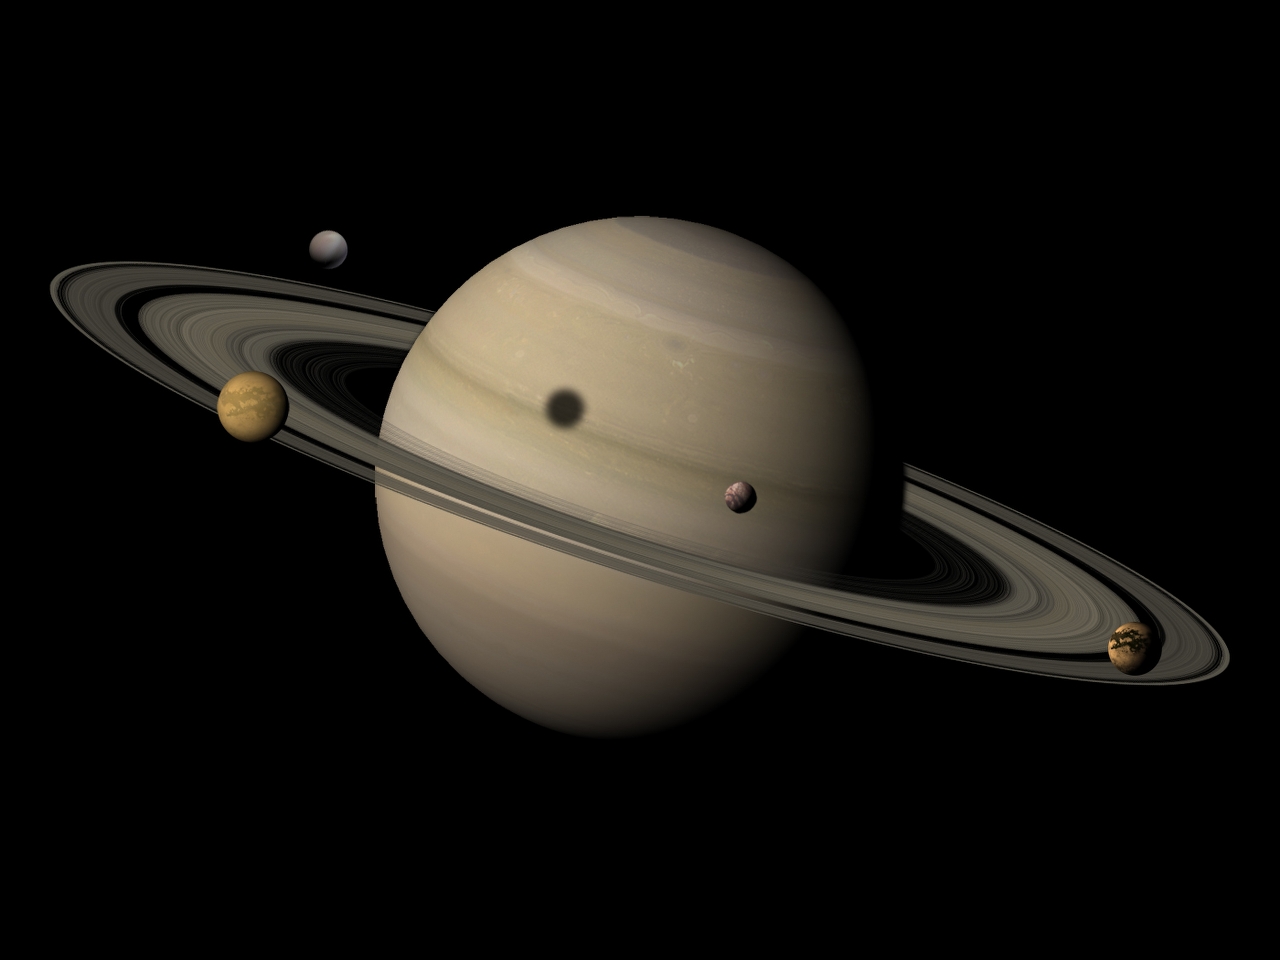 Satürn Resimleri